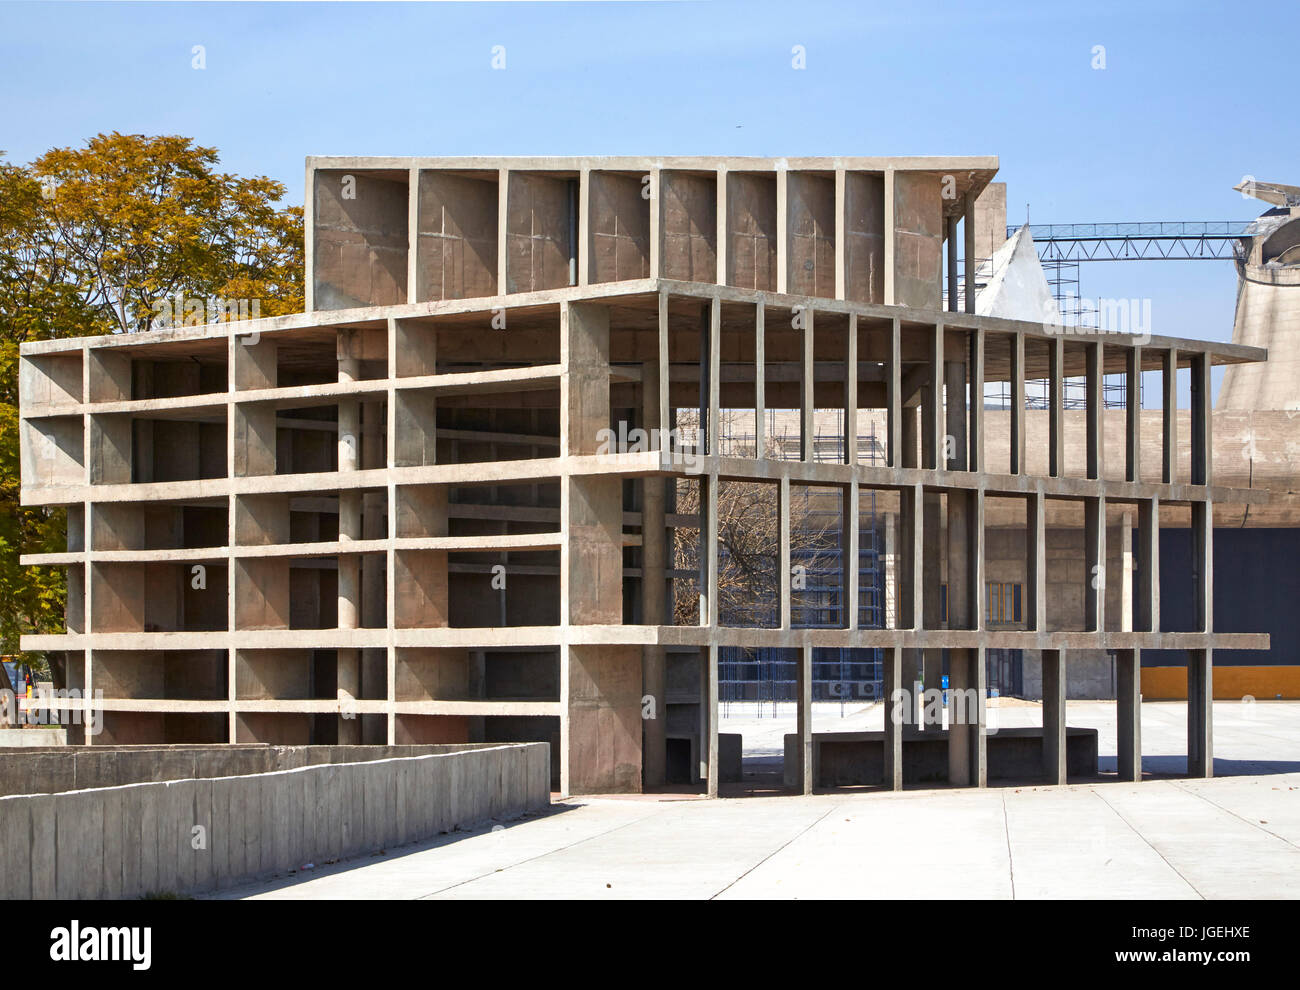 Tour des Vents structure. Le Palais de Justice, Chandigarh, Inde. Architecte : Le Corbusier, 1955. Banque D'Images